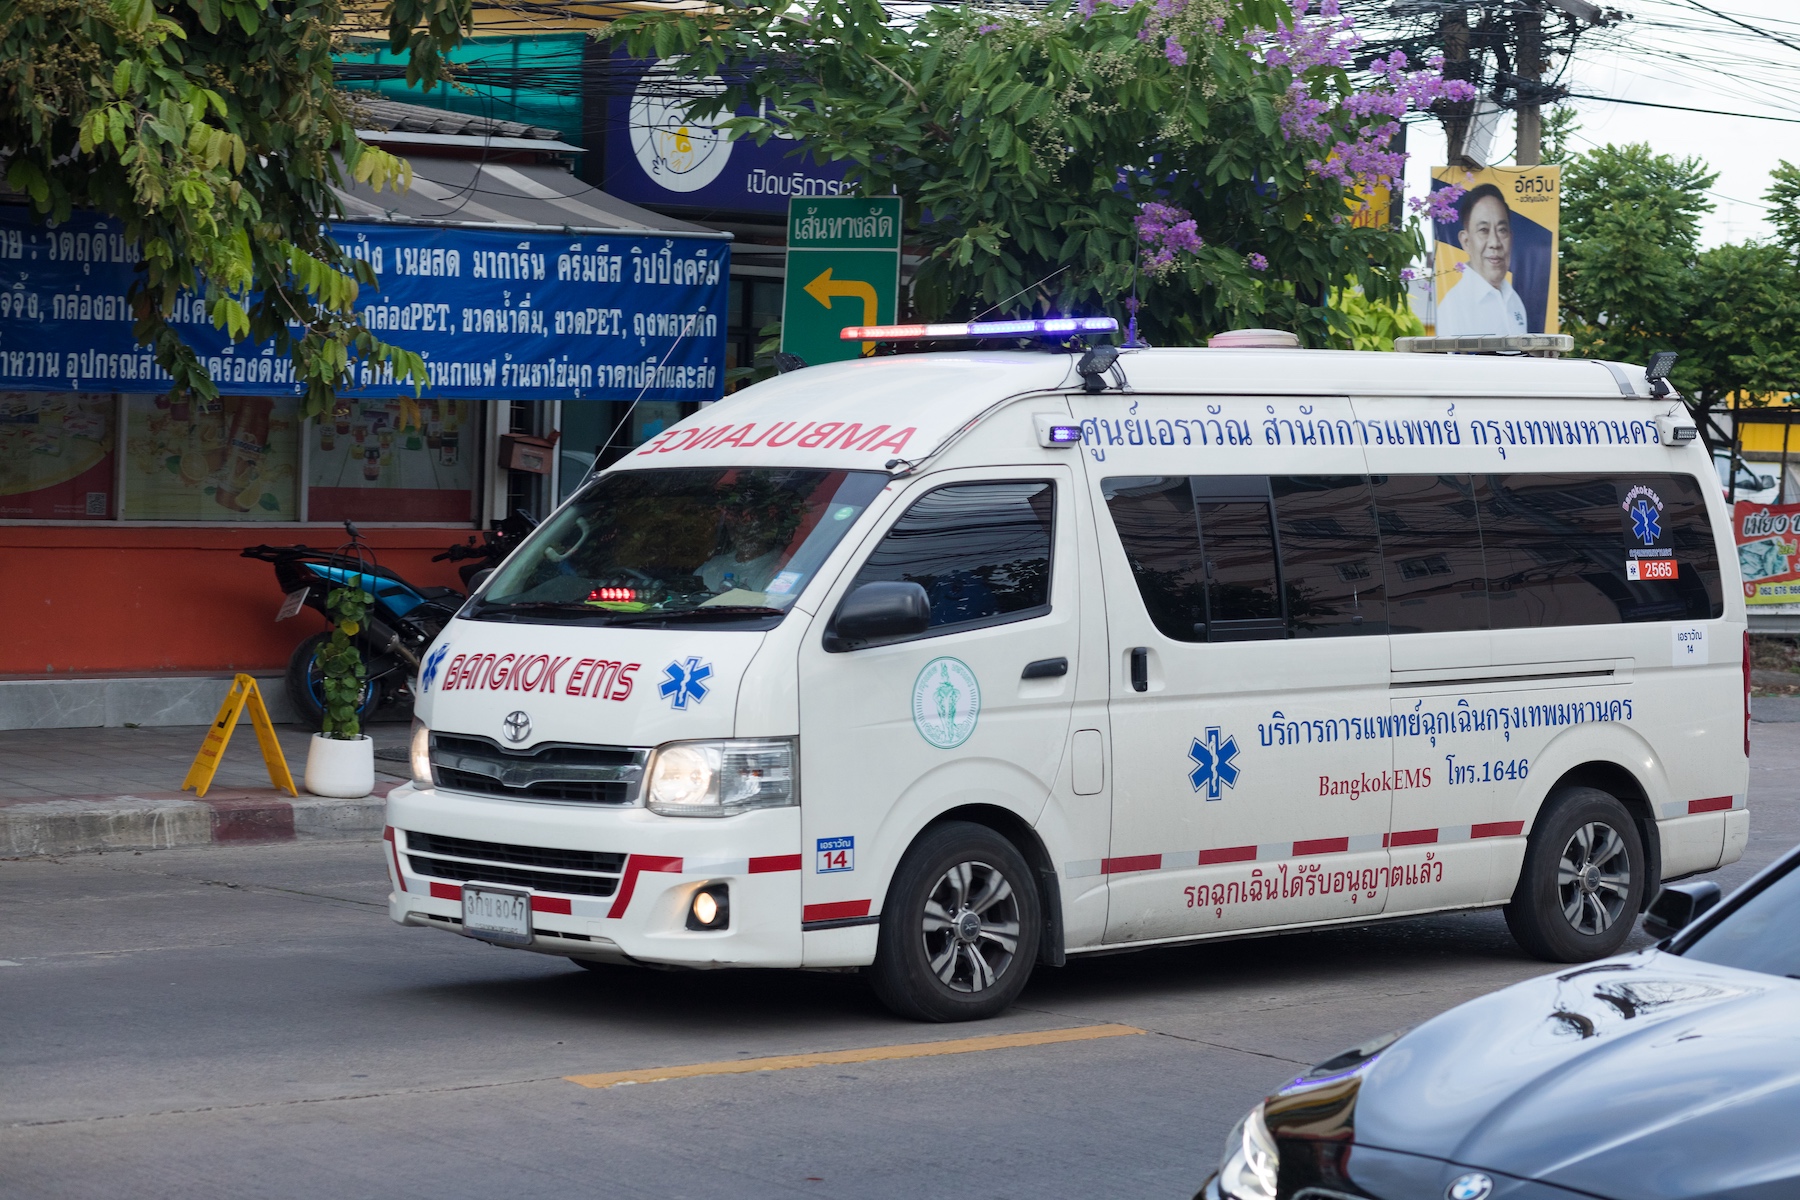 An ambulance drives down the streets of Bangkok
Wanghin Road, Bangkok, Thailand 